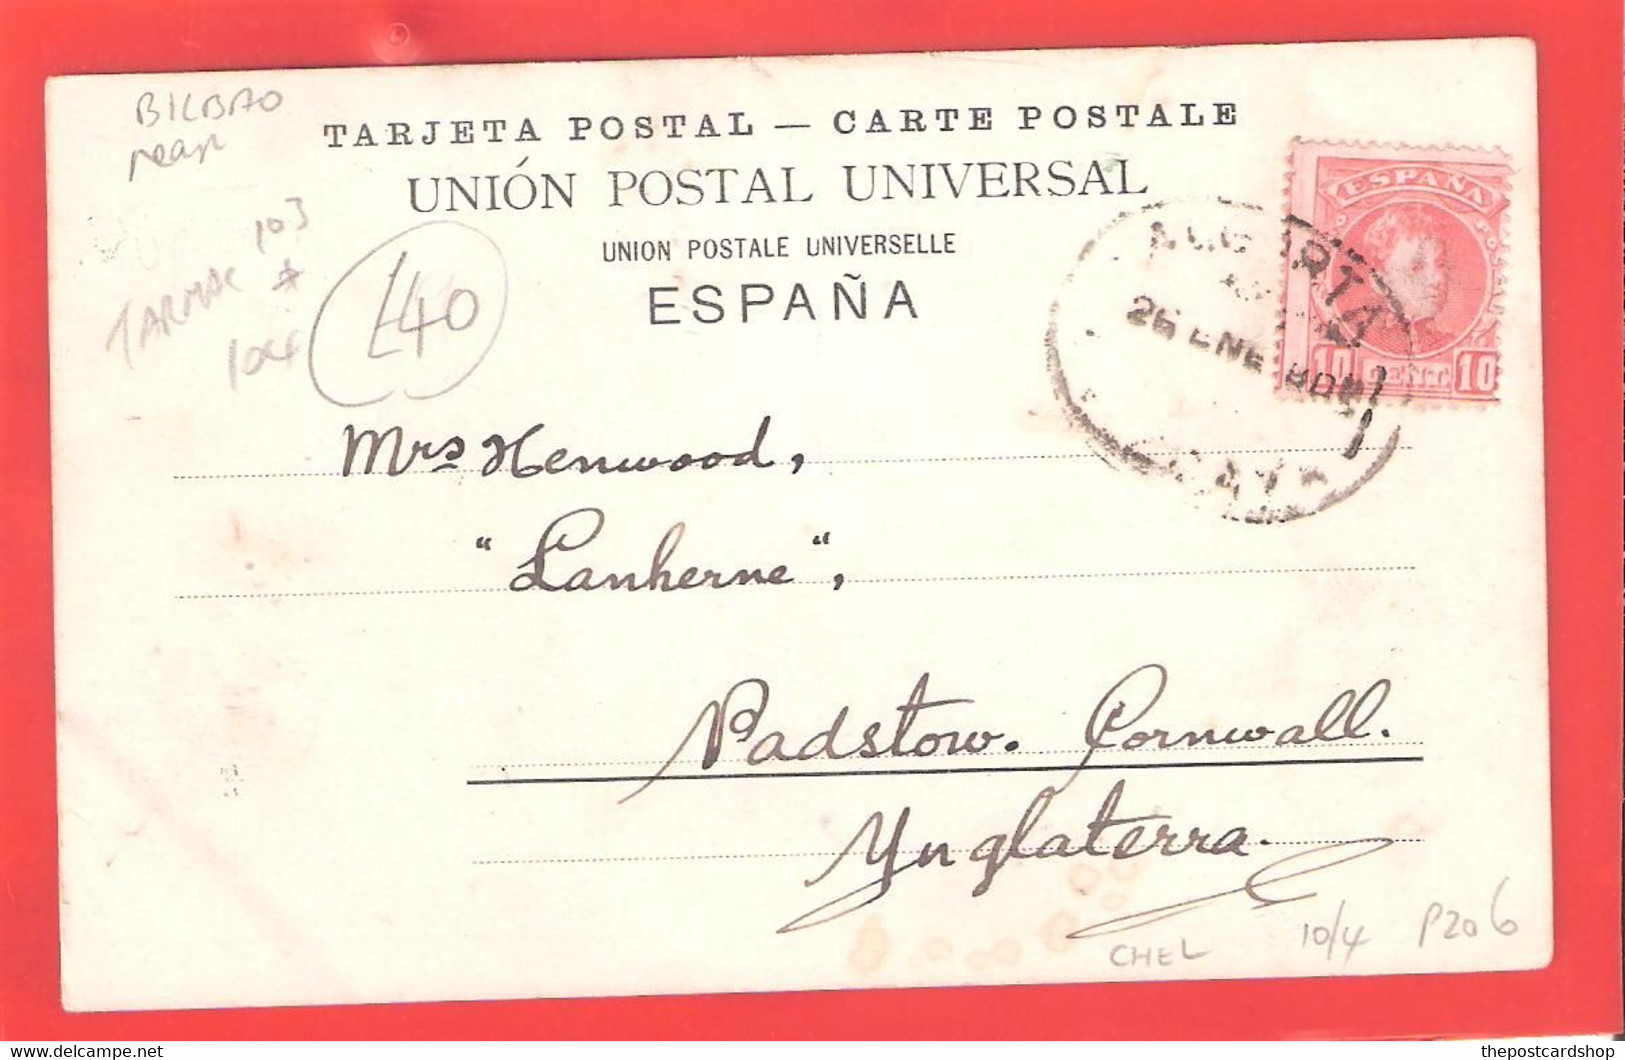 SPAIN ESPANA BEGONA - BILBAO ROMMLER & JONAS DRESDEN16641 A,12  1905 DOS NON DIVISE CIRCULADO RARE - Vizcaya (Bilbao)